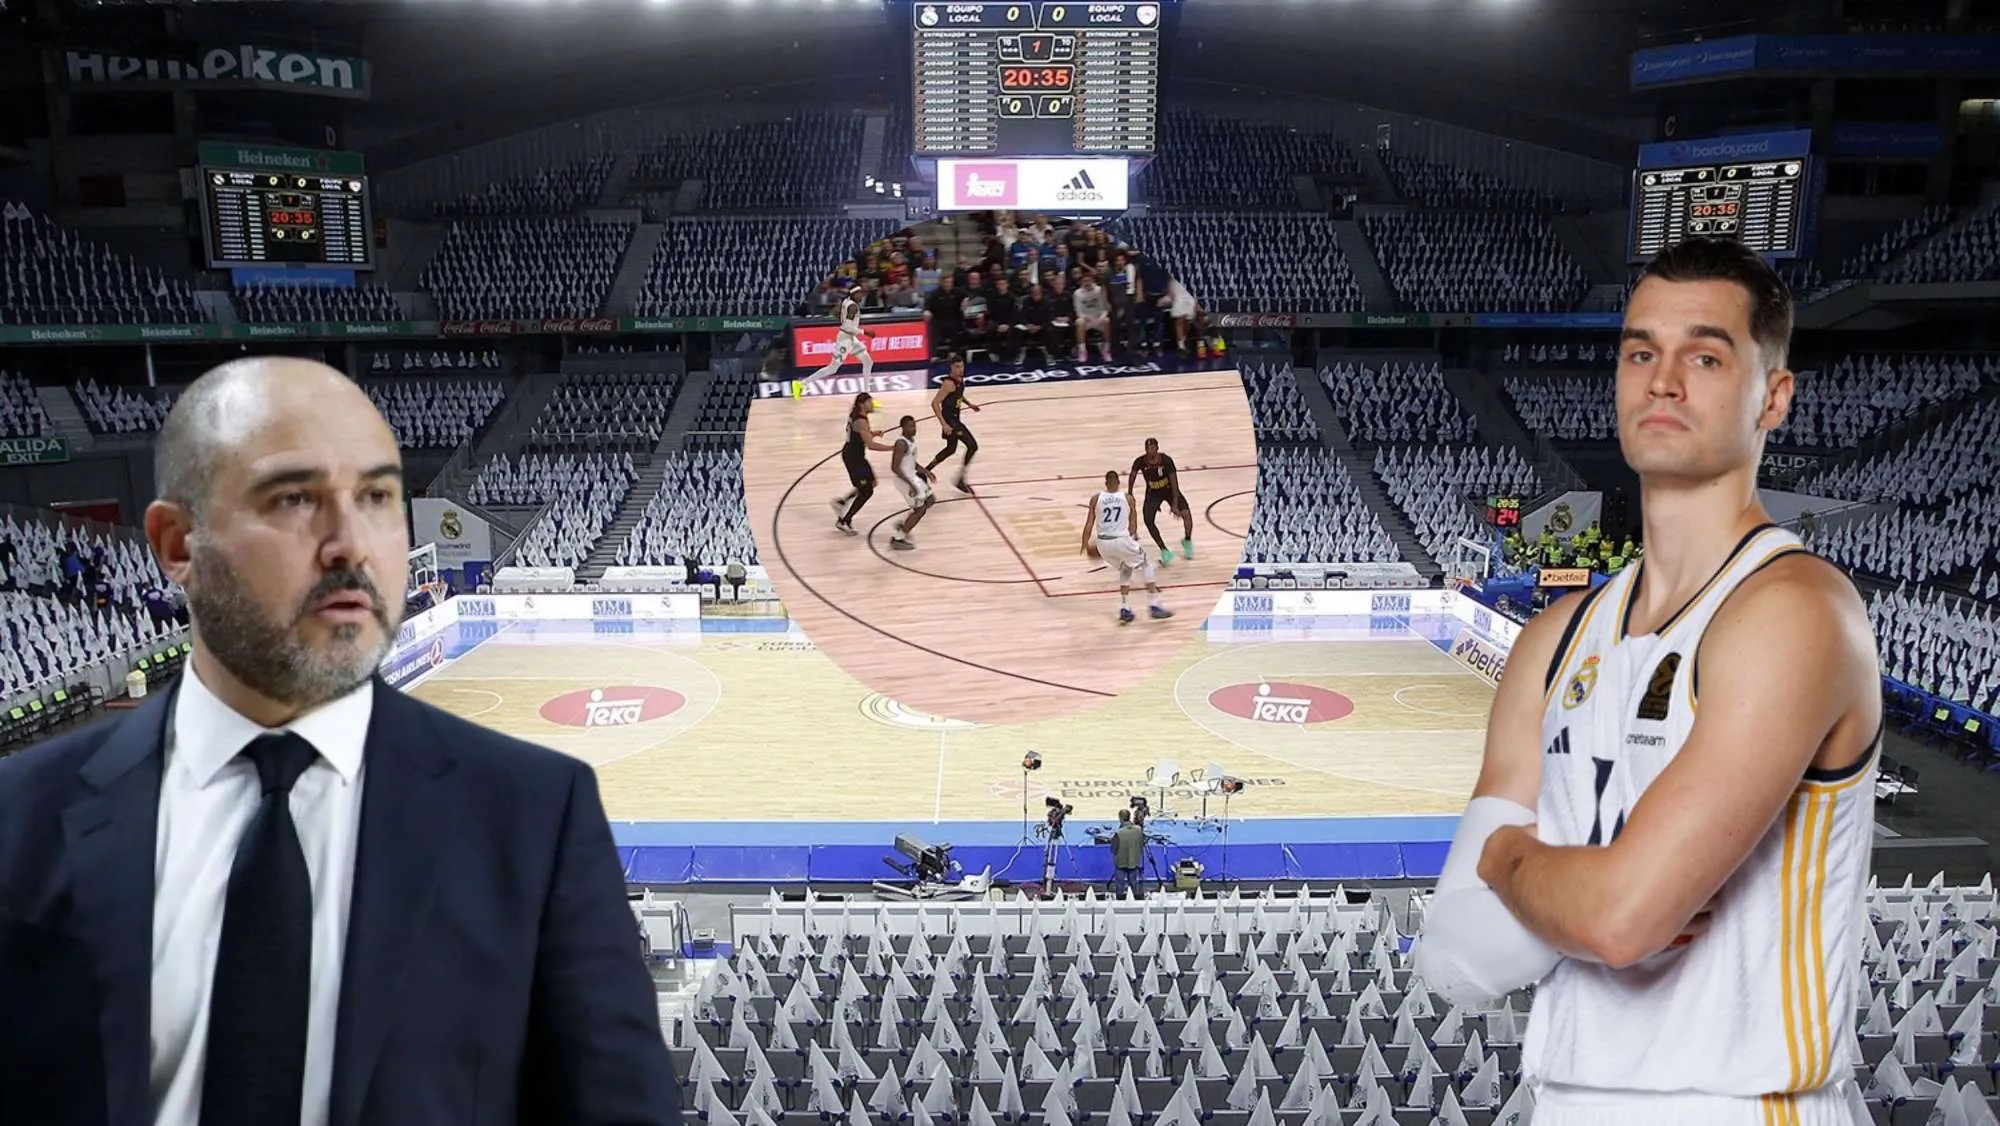 Hezonja tiene su futuro en el aire, se filtra un vídeo de un crack de la NBA: “Mi objetivo es ir al Madrid”